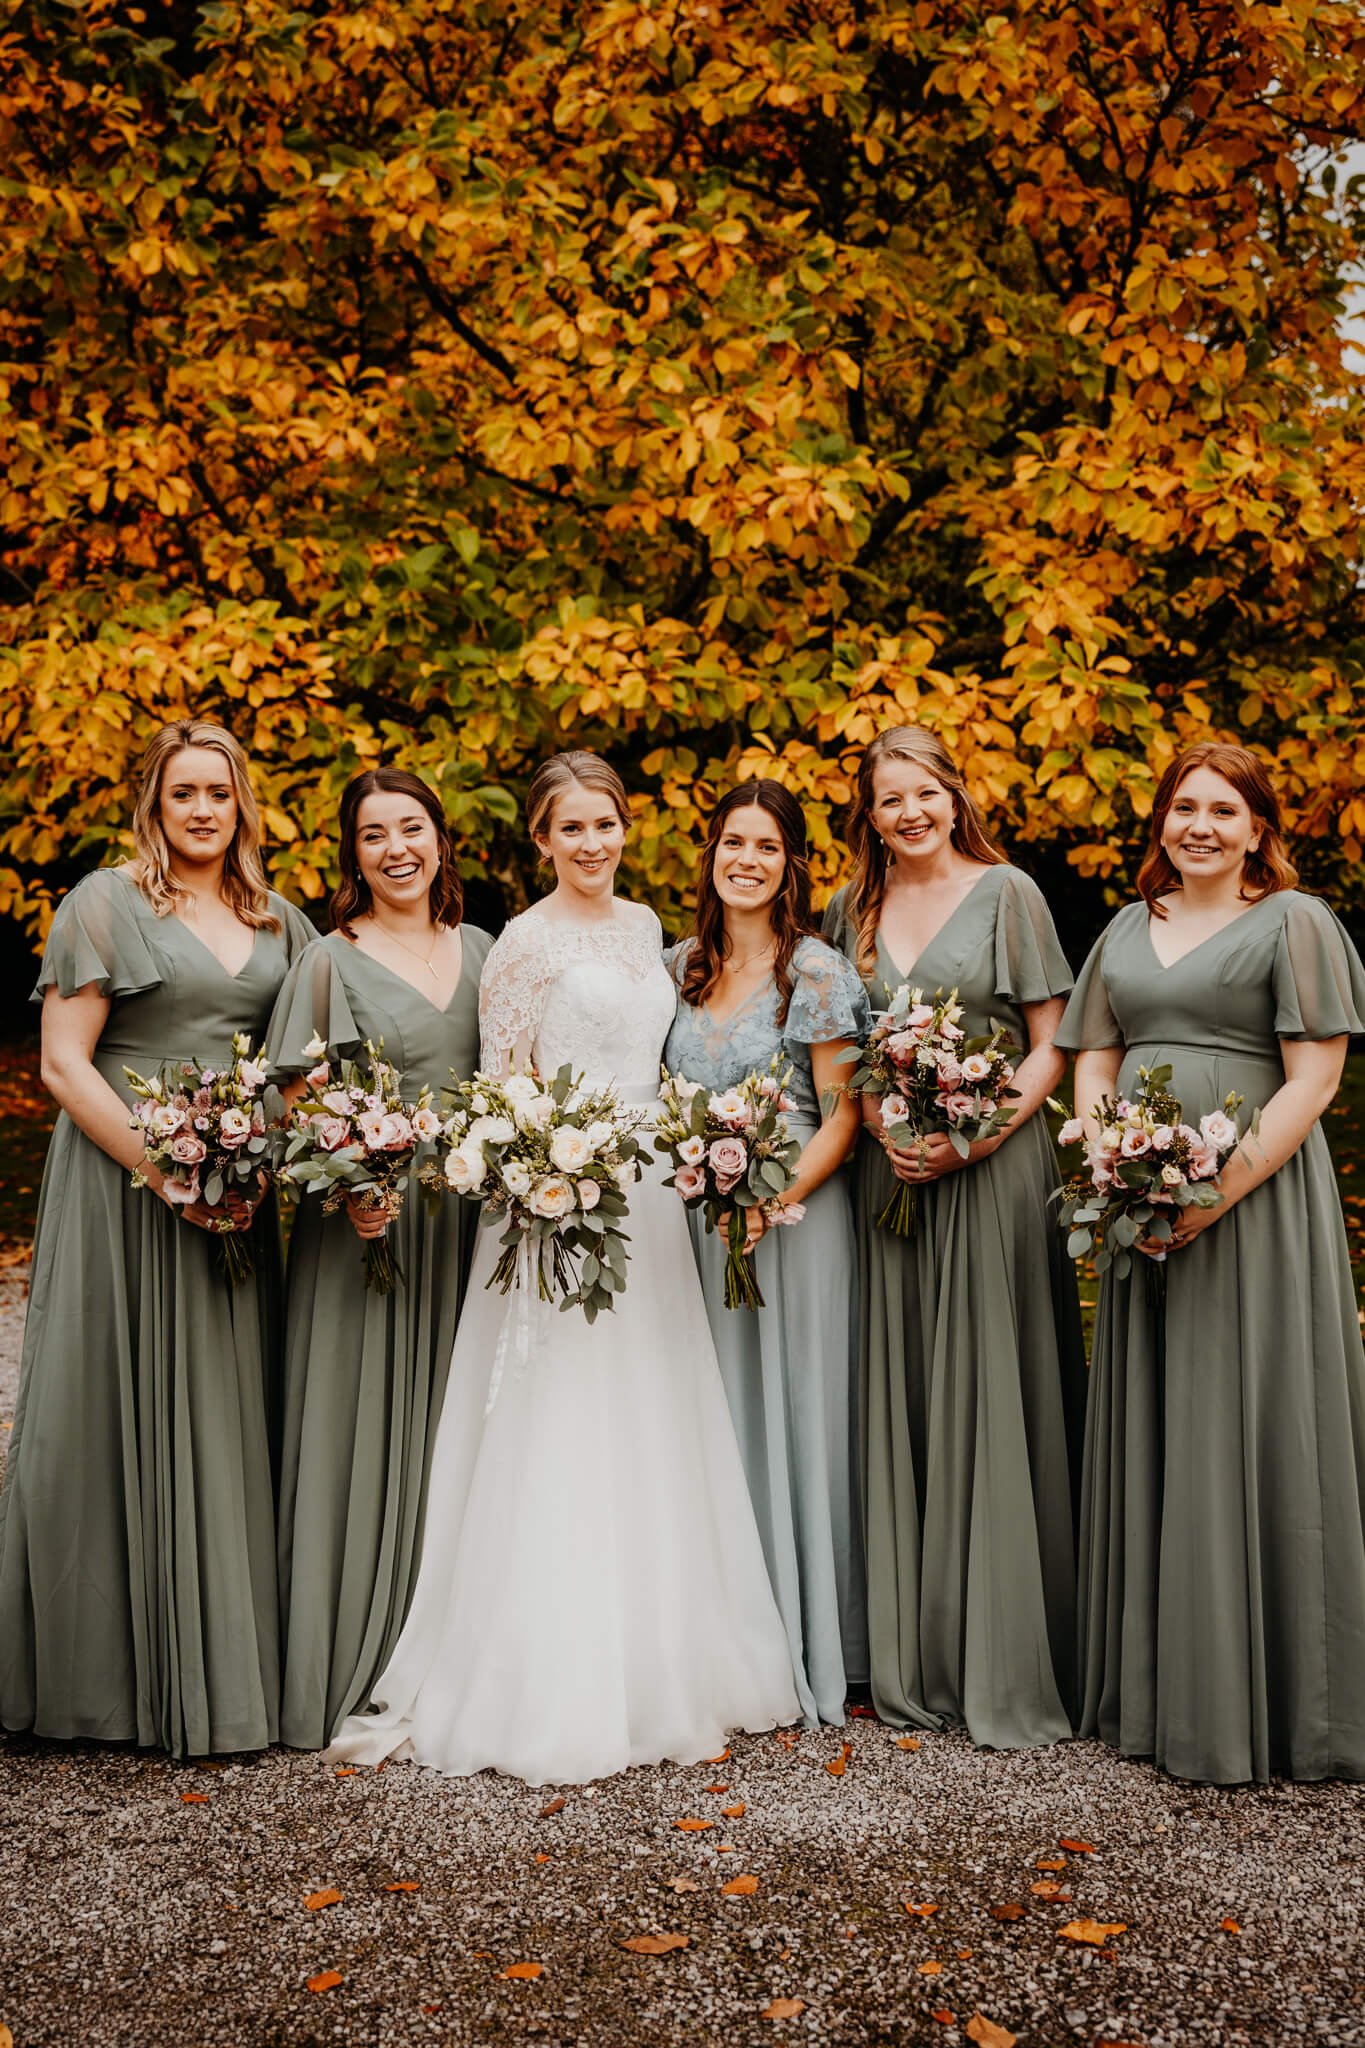 Beth-Shean-Wedding-bride-and-bridesmaids-4.jpg